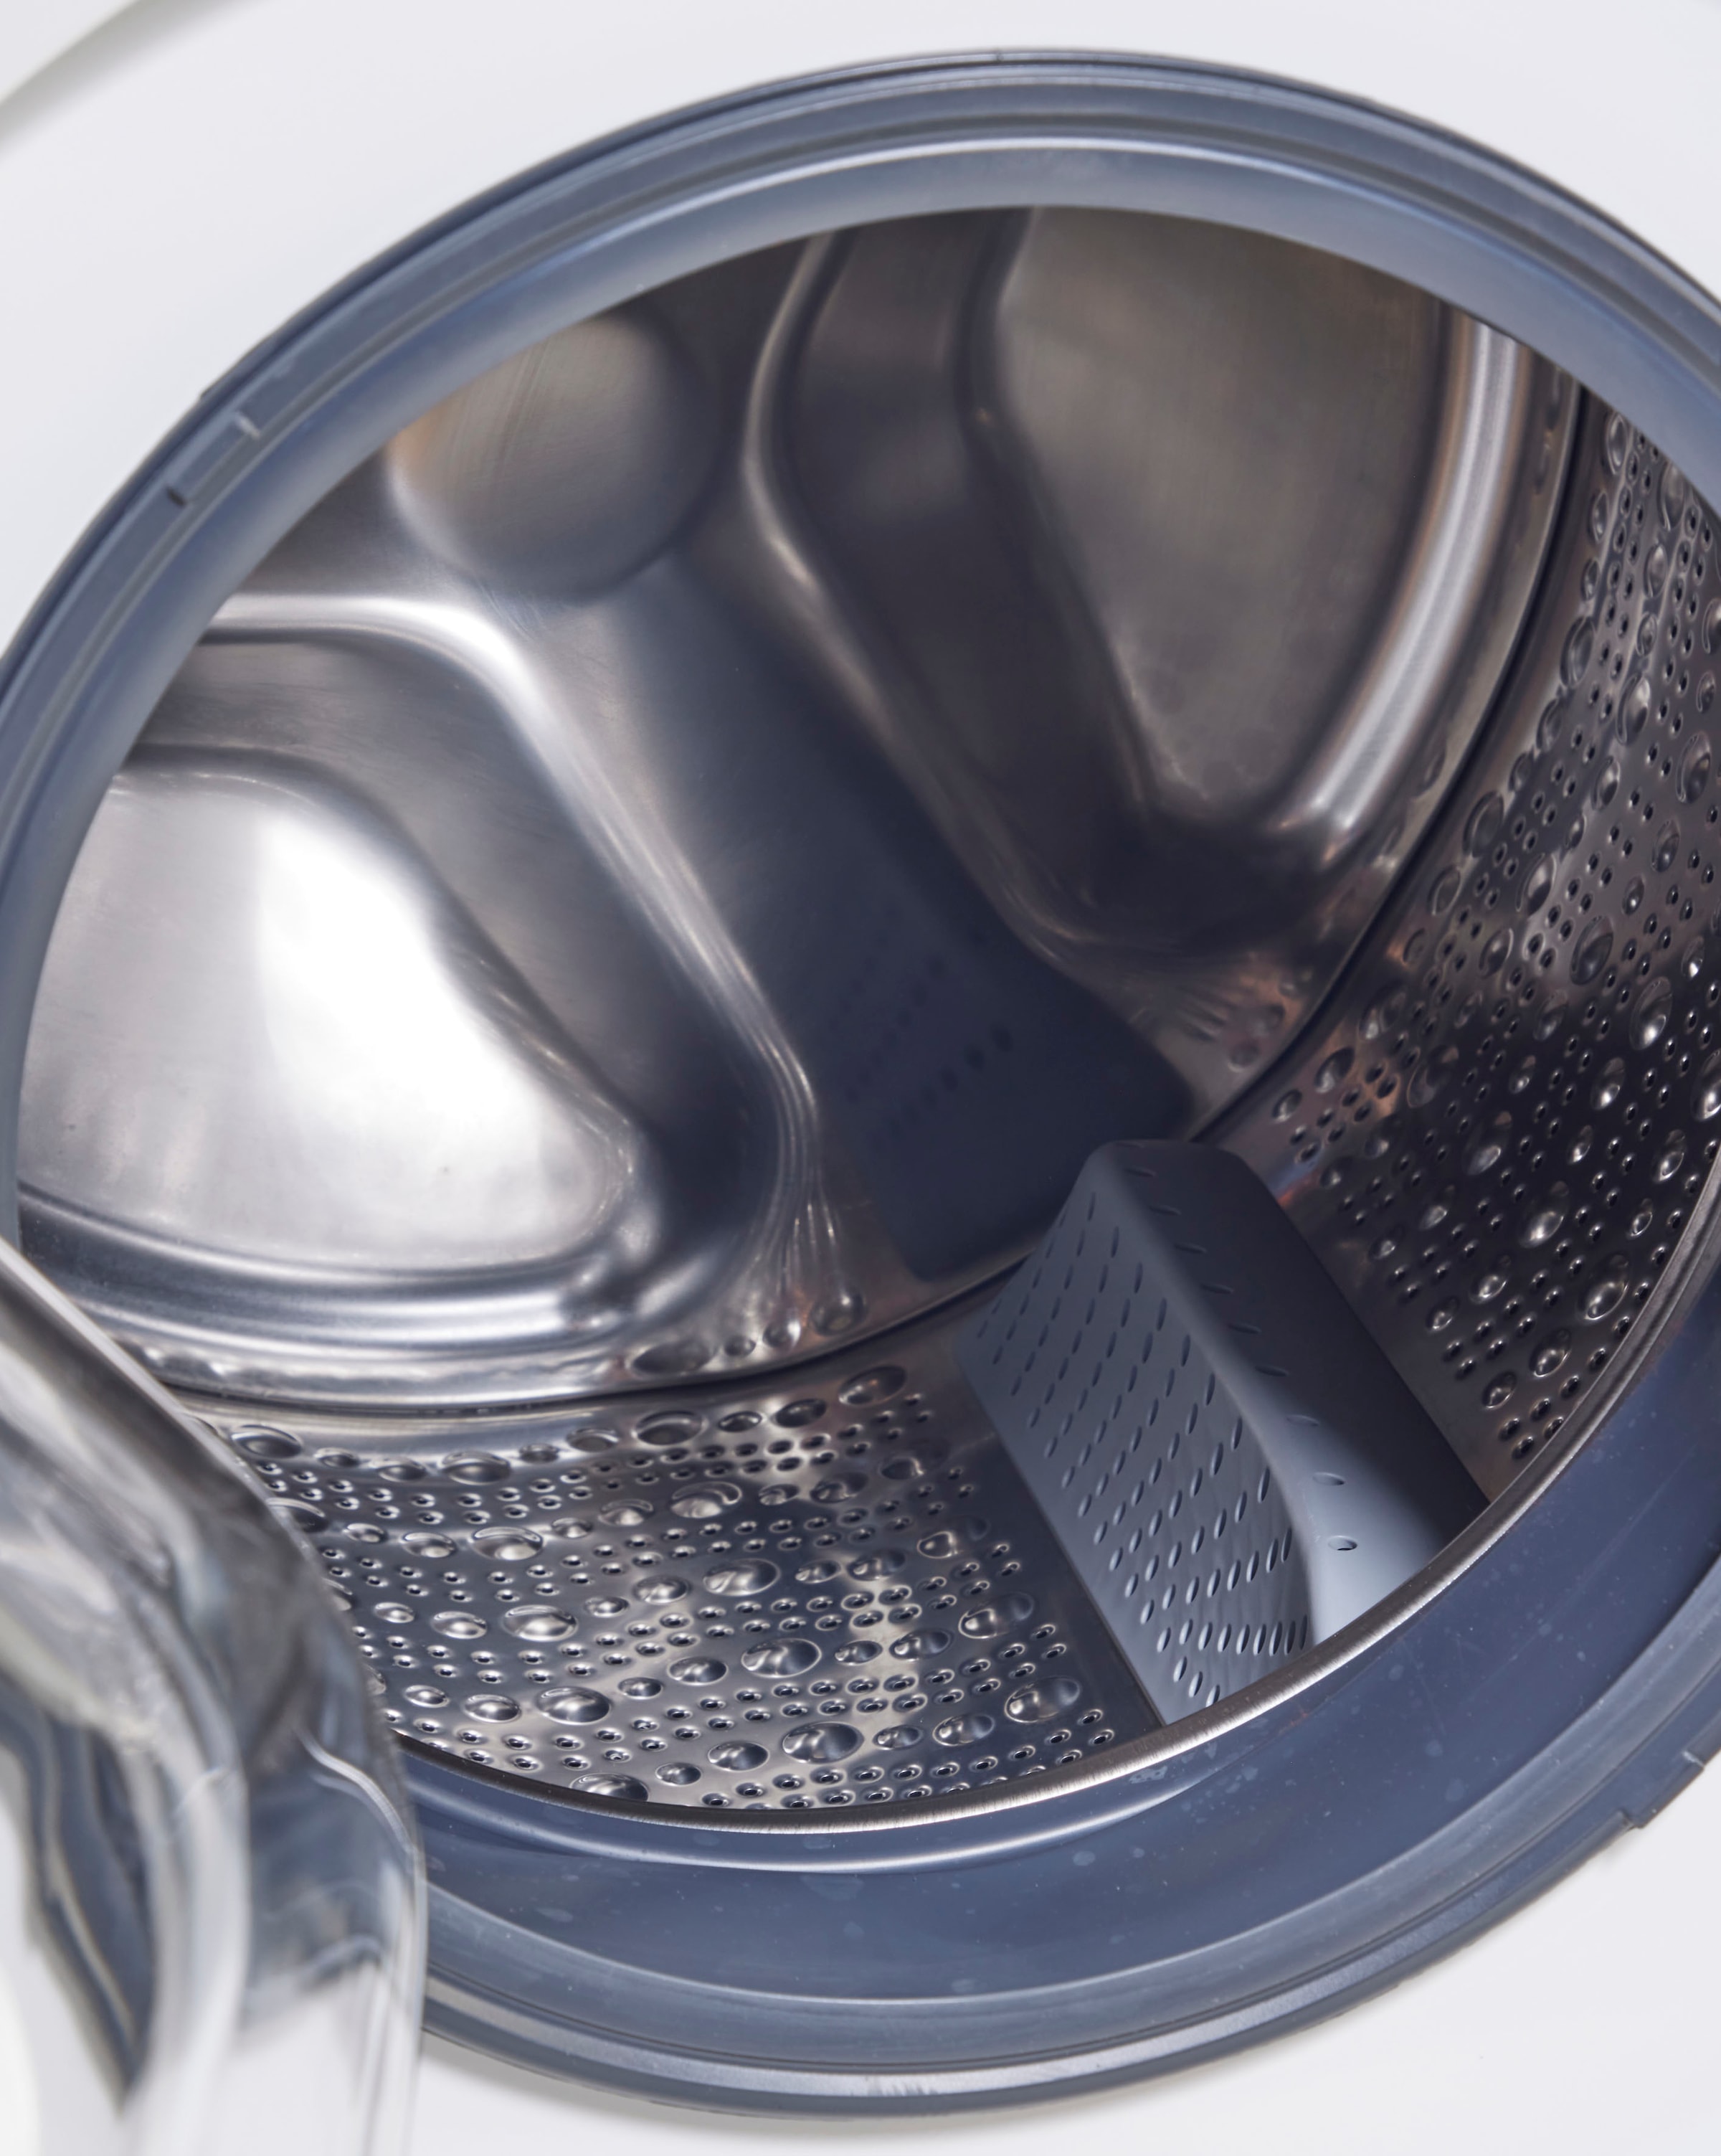 SIEMENS Waschmaschine »WG44G2040«, iQ500, WG44G2040, 9 kg, 1400 U/min  online kaufen | BAUR